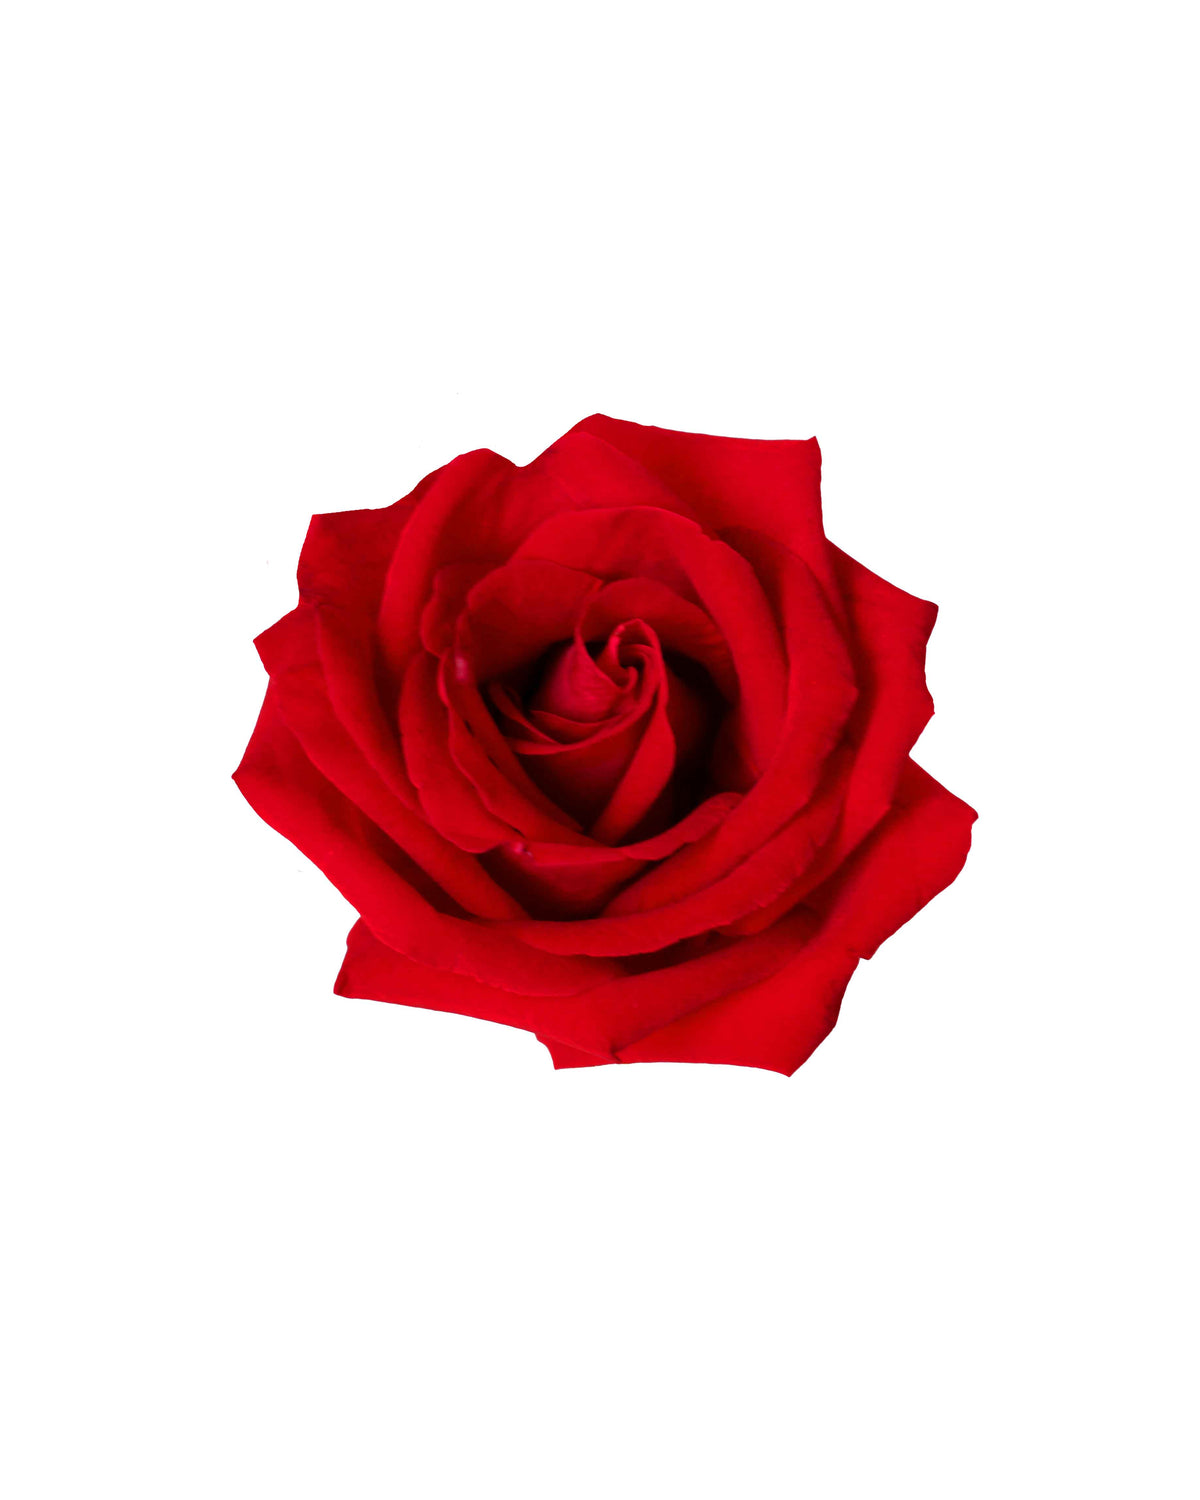 Rose (China) - Red